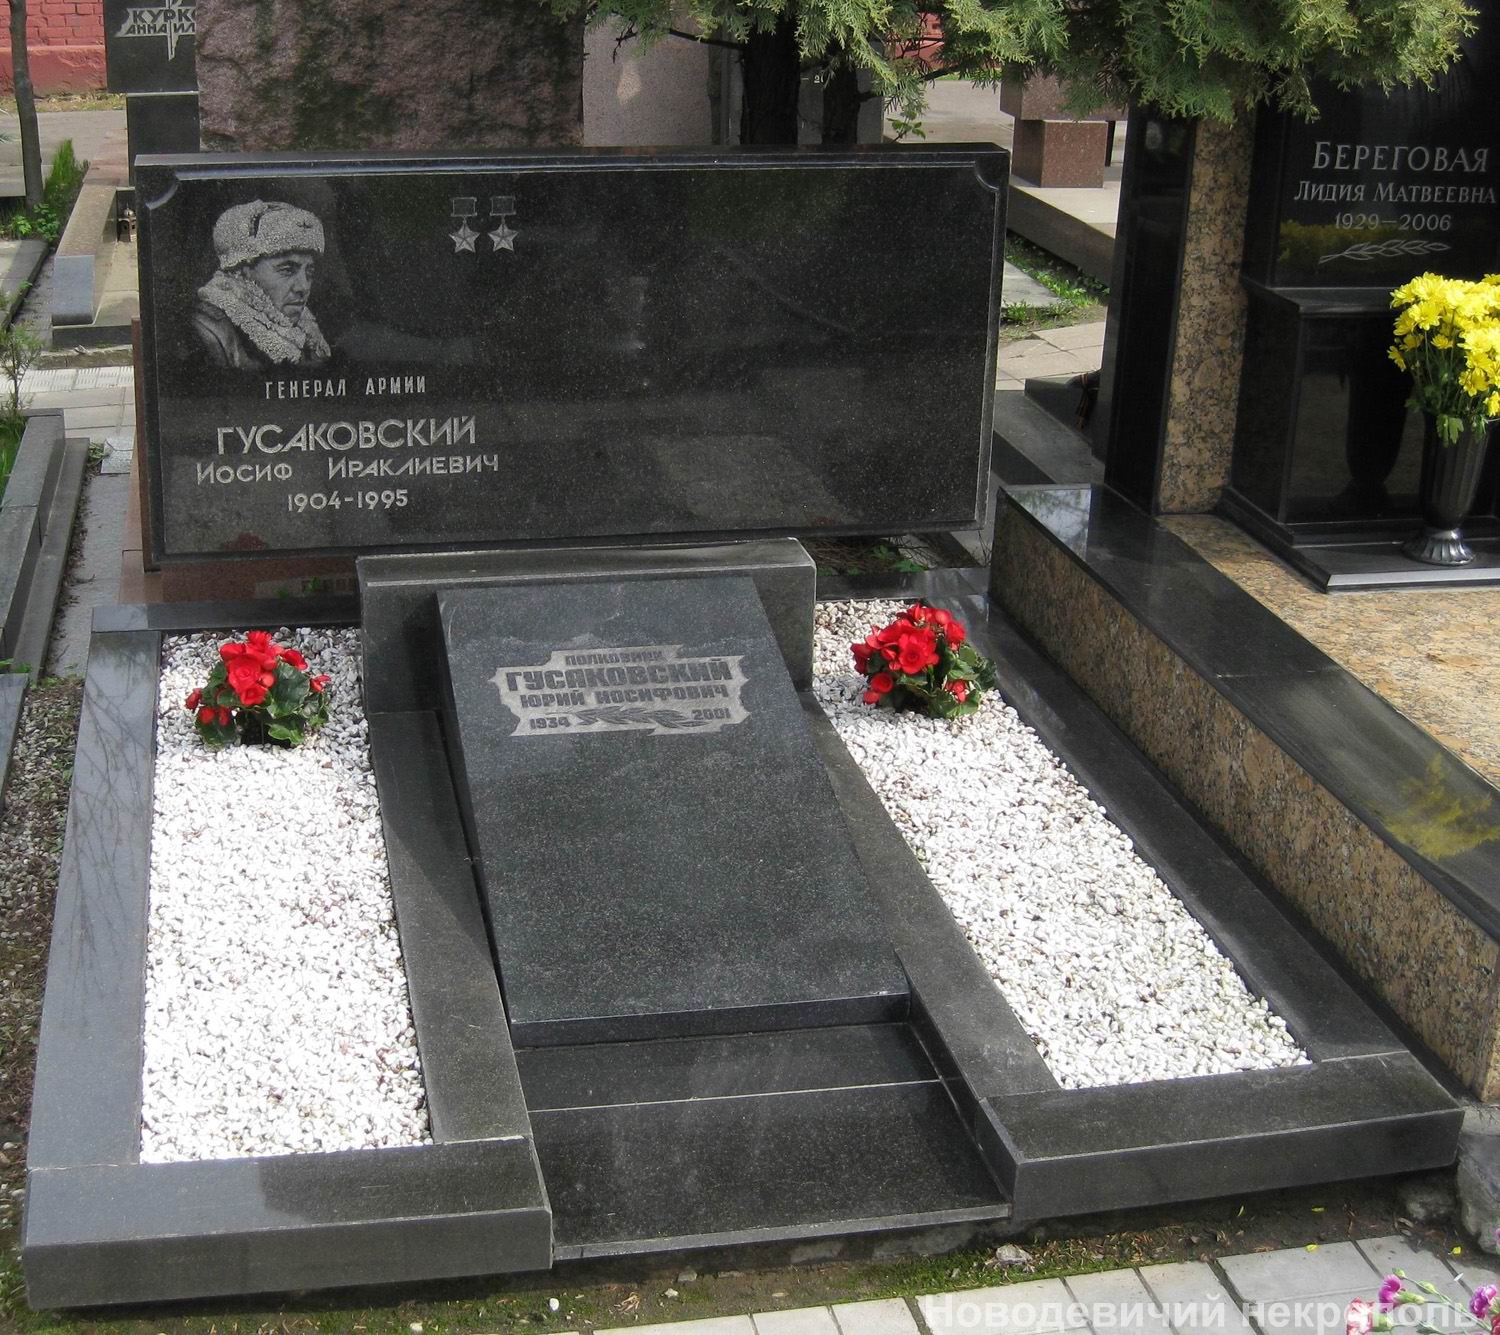 Памятник на могиле Гусаковского И.И. (1904–1995), на Новодевичьем кладбище (11–4–6).